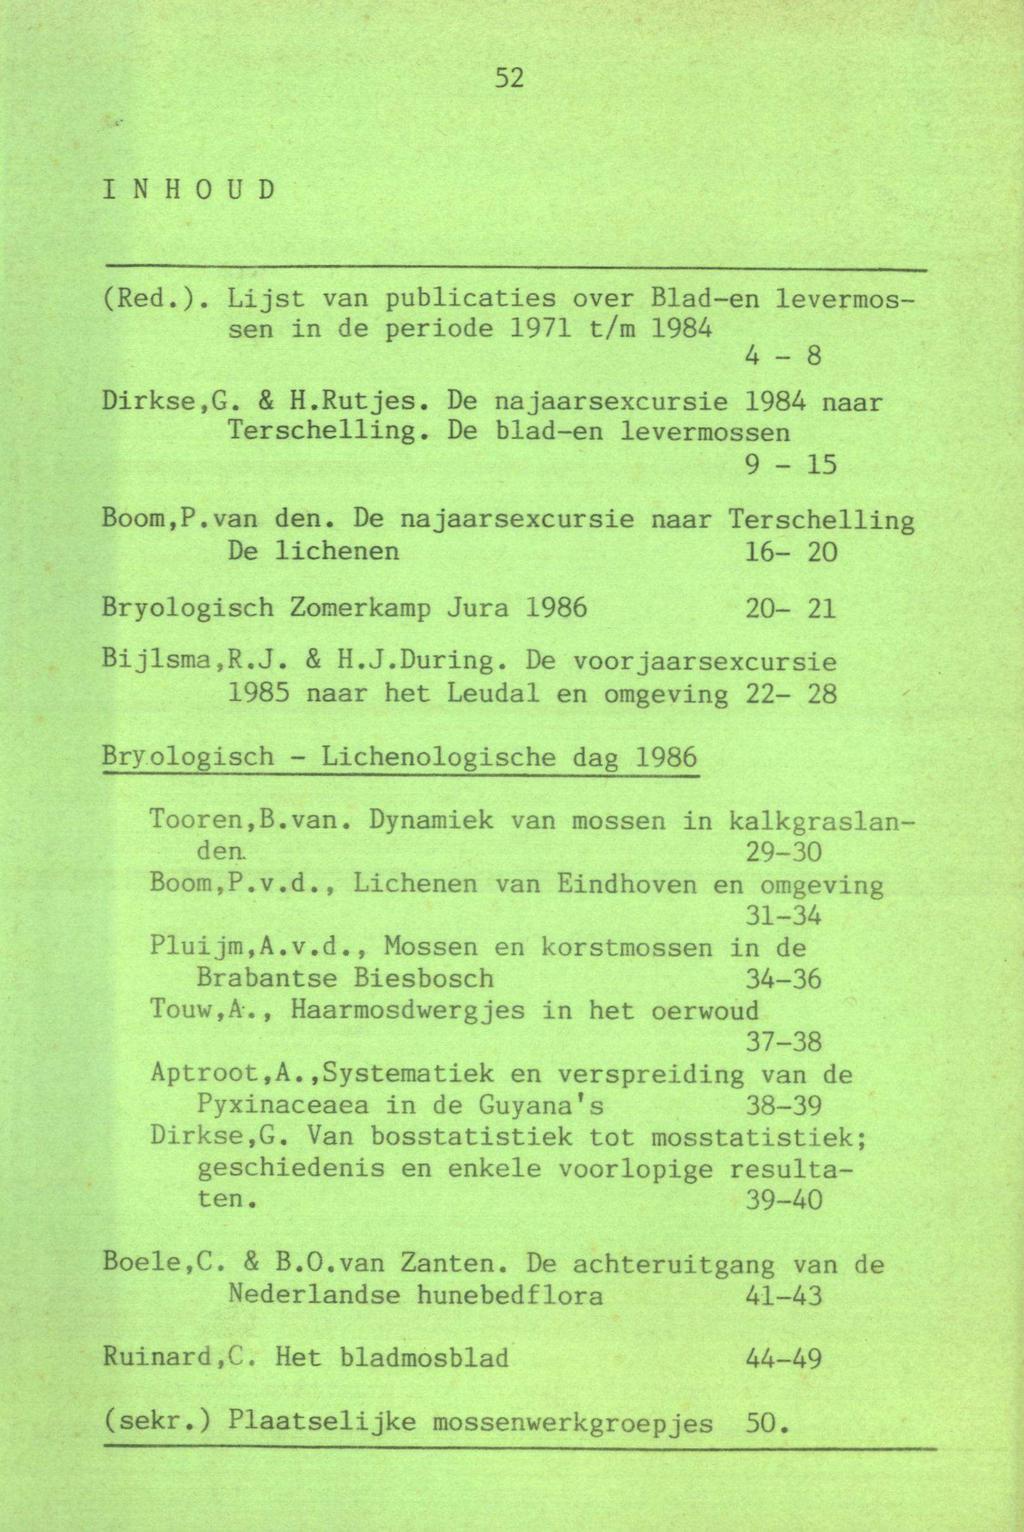 52 Inhoud (Red.). Lijst van publicaties over Blad-en levermossen in de periode 1971 t/m 1984 4-8 Dirkse.G. & H.Rutjes. De najaarsexcursie 1984 naar Terschelling. De blad-en levermossen 9-15 Boom,P.